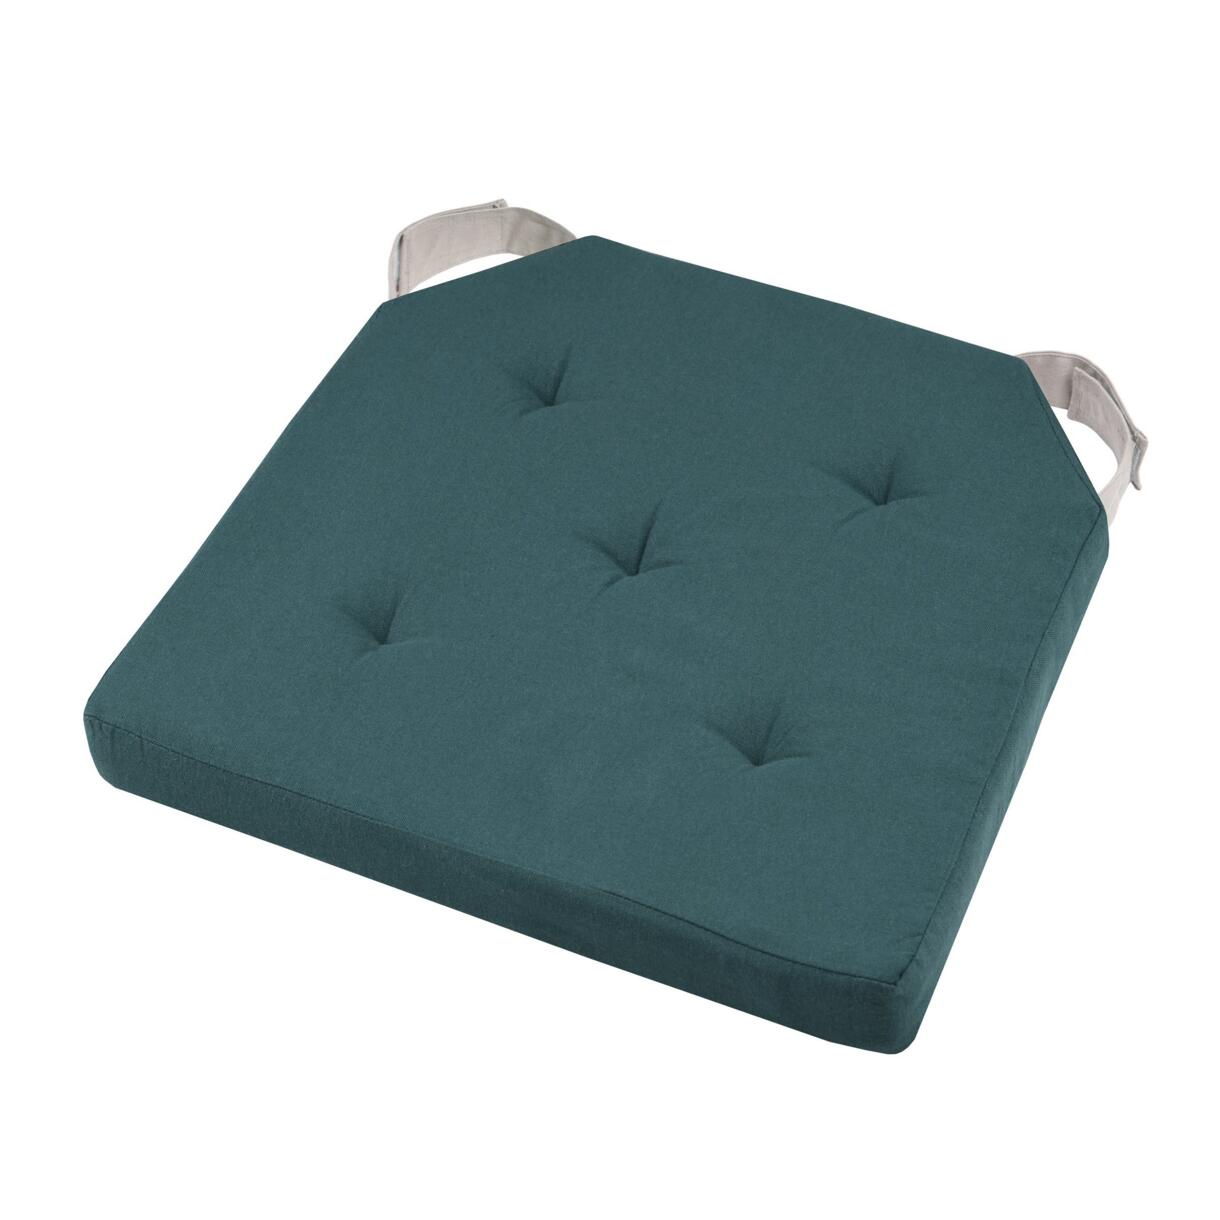 Galette de chaise scratch carrée Duo Bleu vert 1